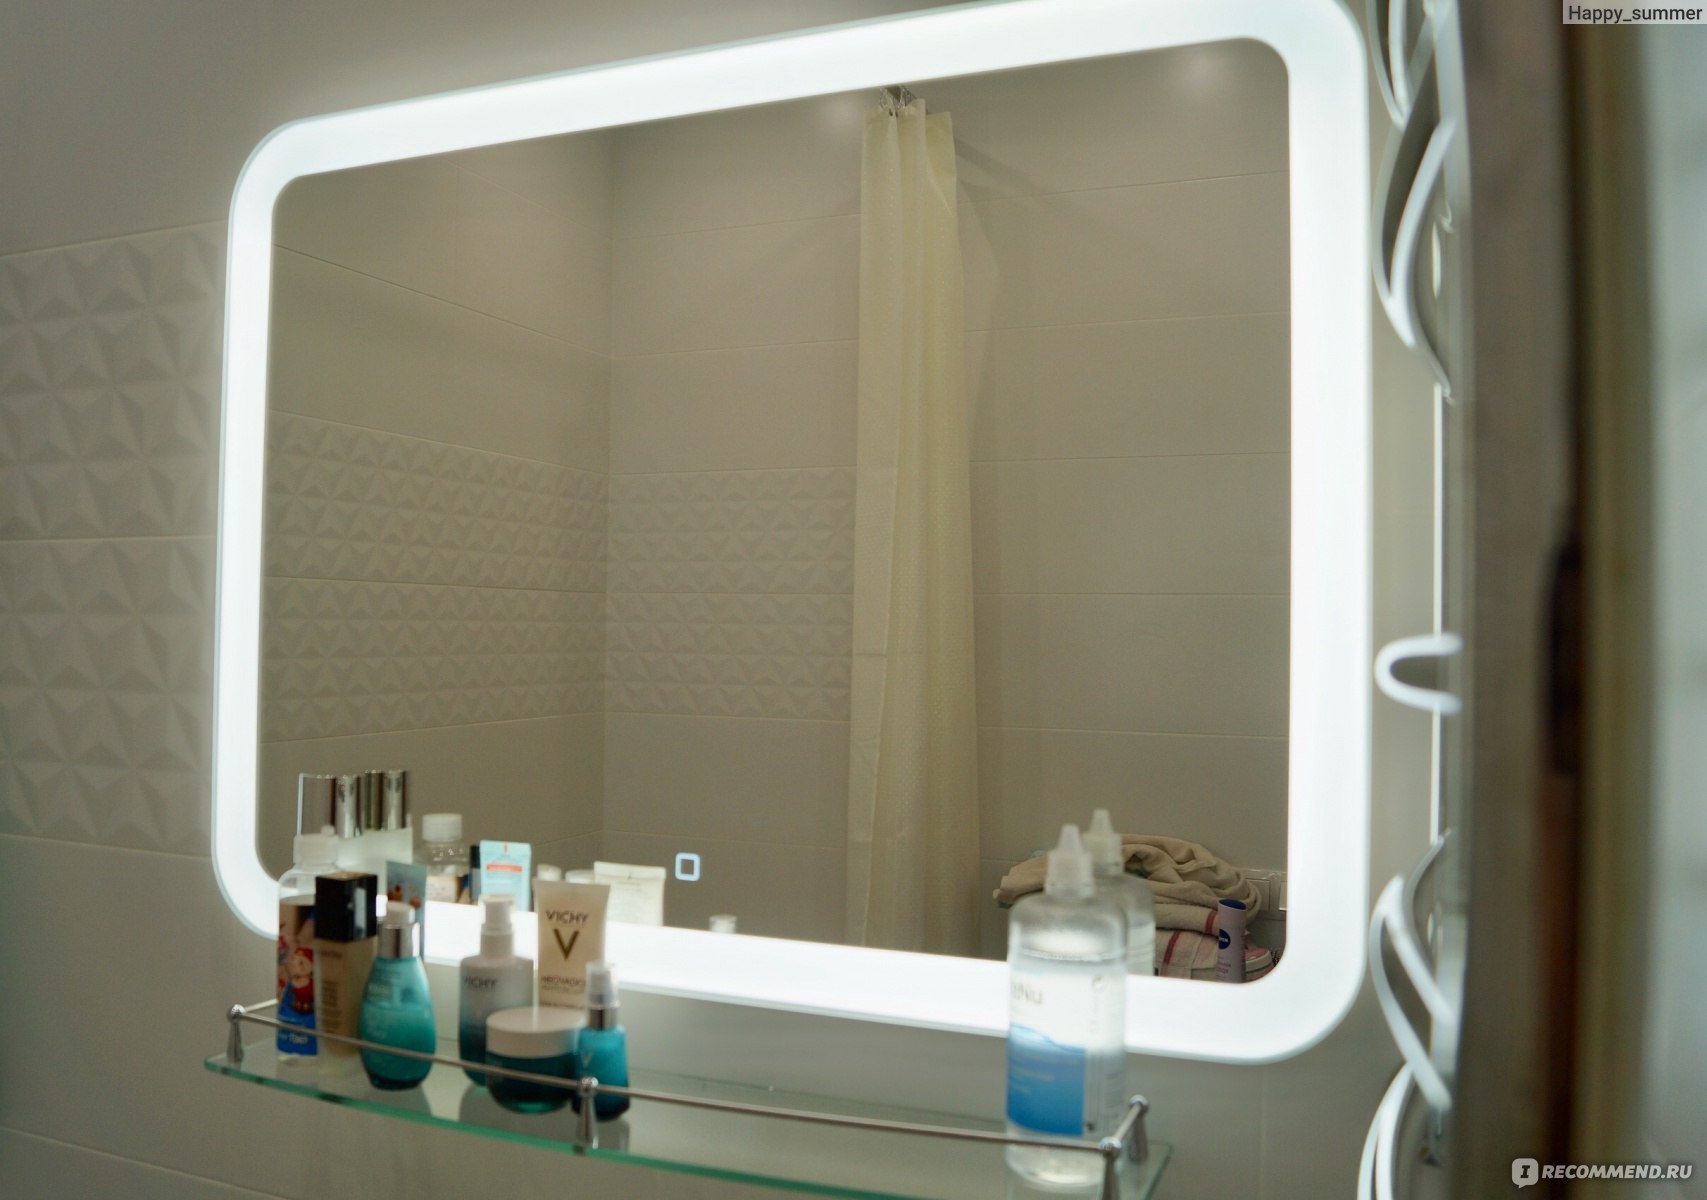 Леруа мерлен зеркало с подсветкой в ванную. Зеркало с подсветкой Леруа Мерлен. Зеркала для ванной комнаты с подсветкой в Леруа Мерлен. Зеркало шкаф с подсветкой в ванную. Зеркало с подсветкой для ванной Леруа.